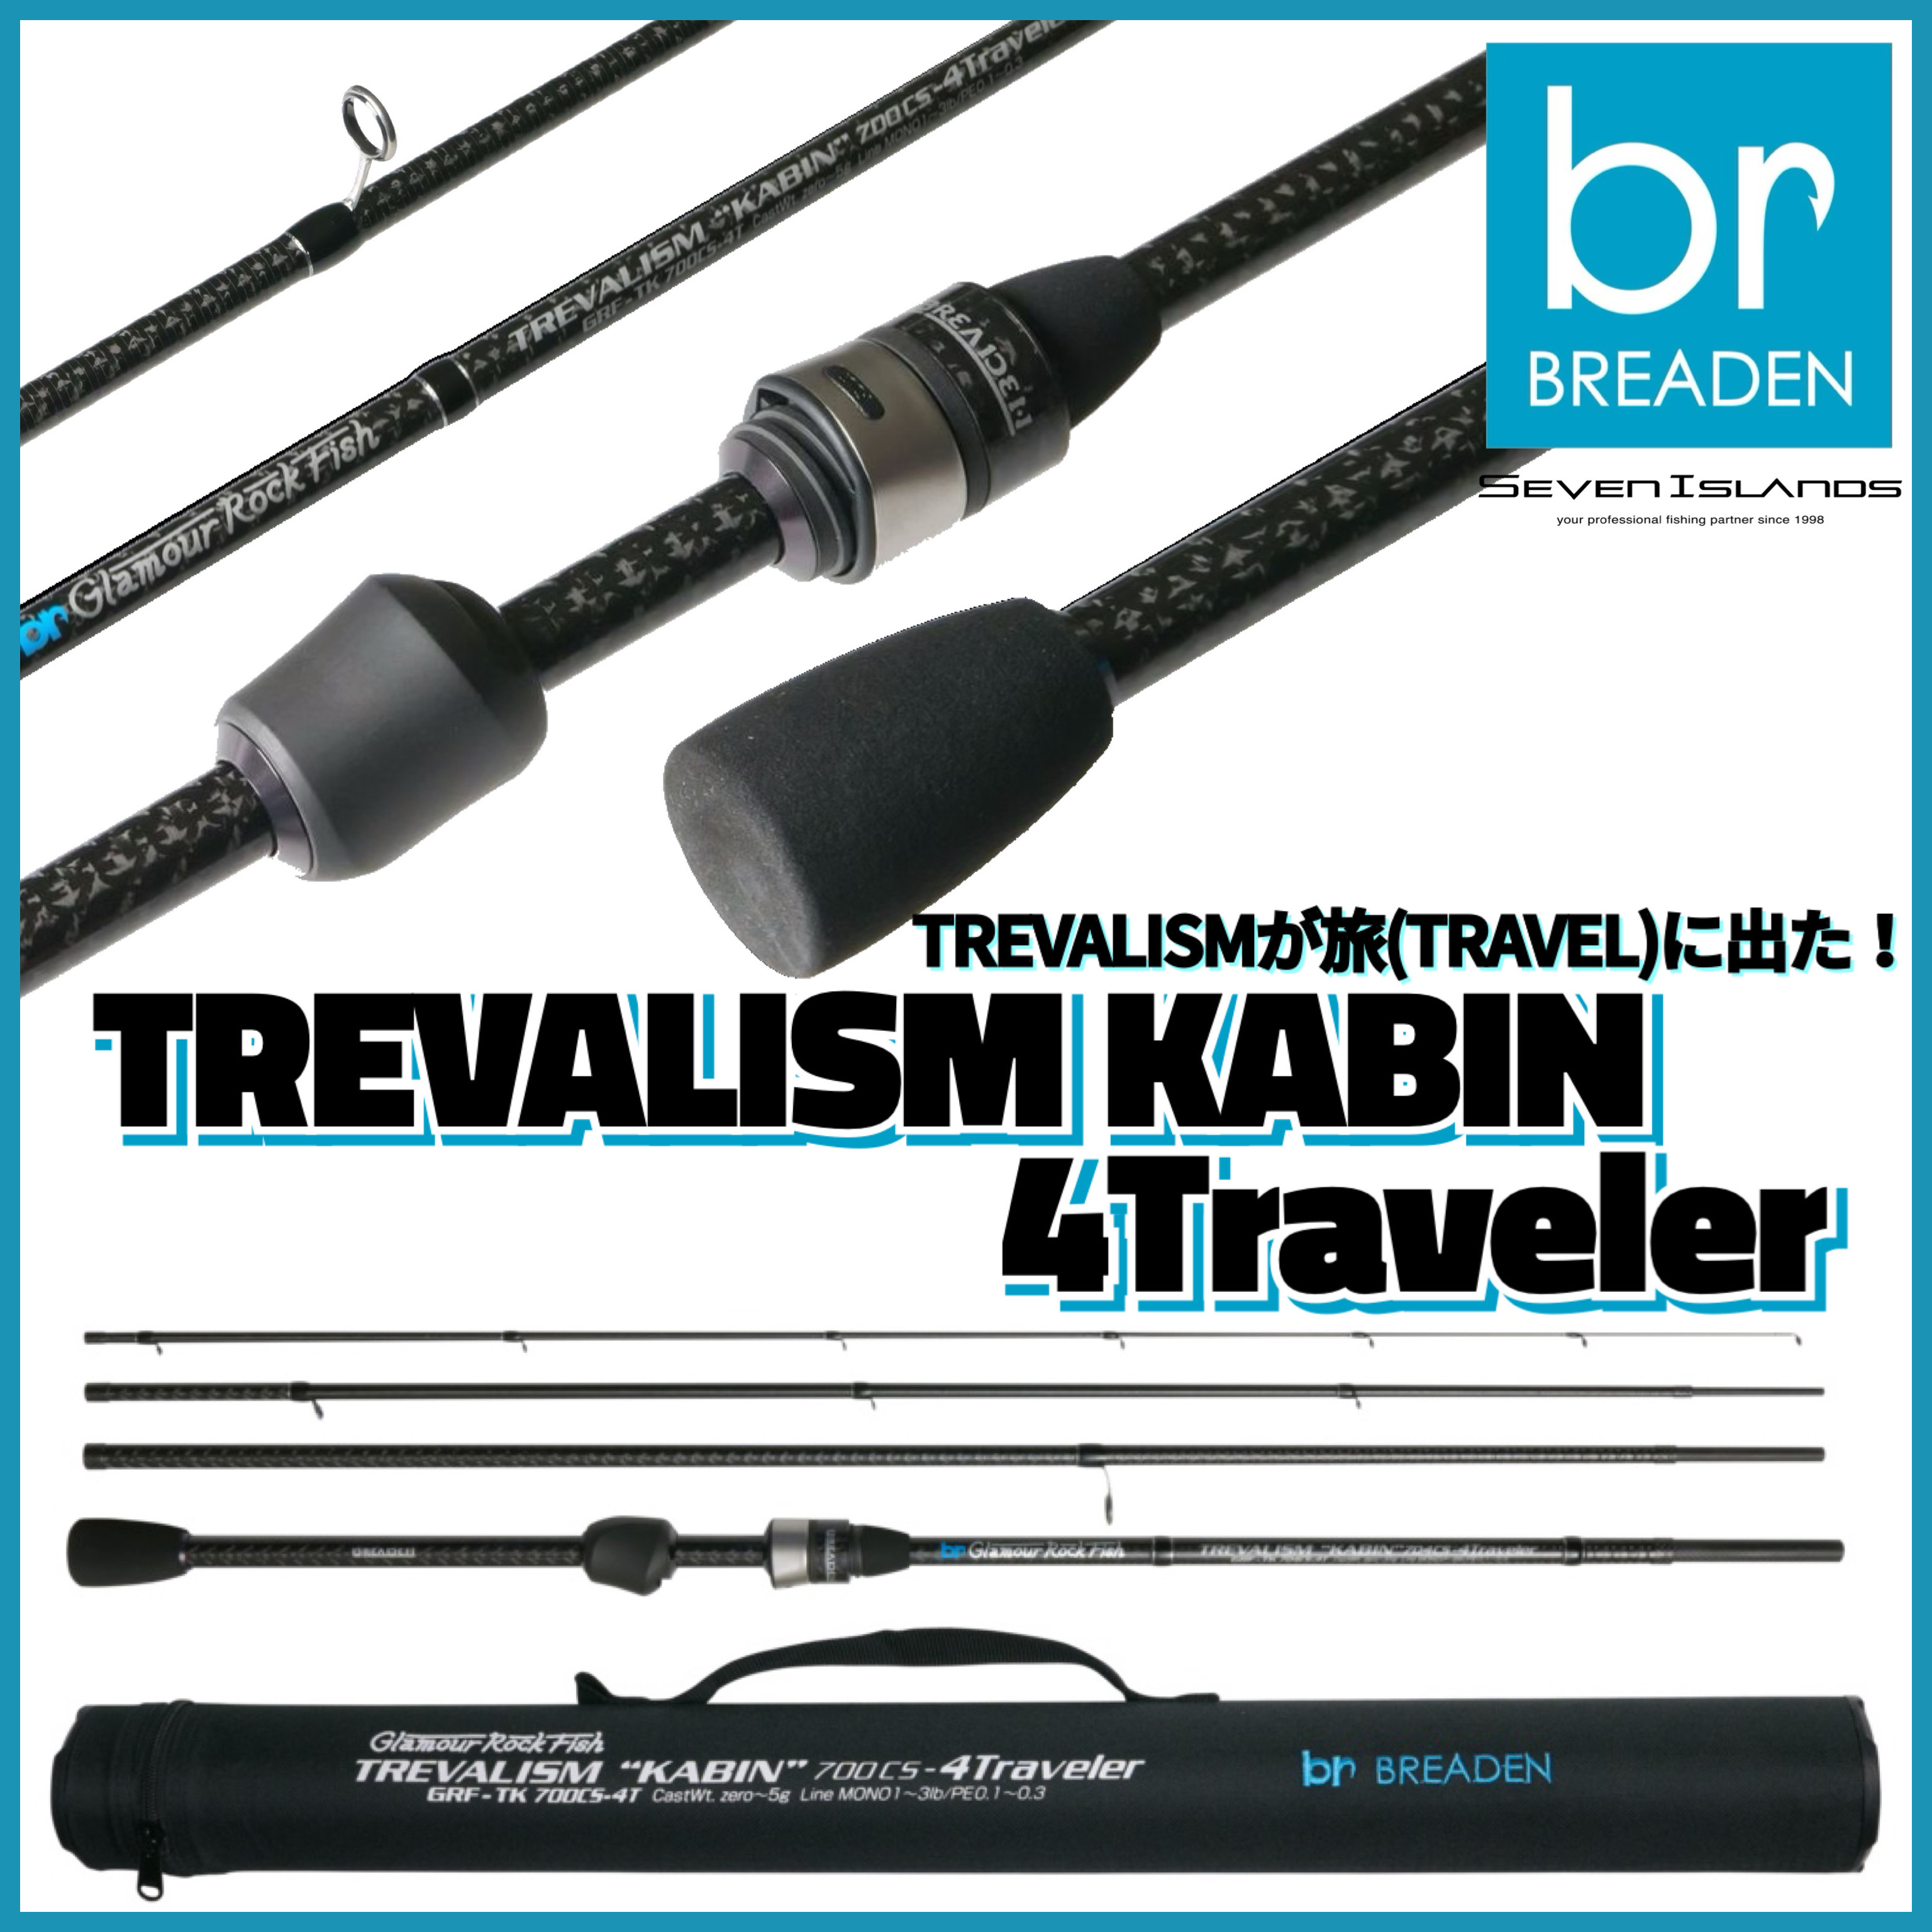 ブリーデン TREVALISM KABIN 700CS-4Traveler - フィッシング